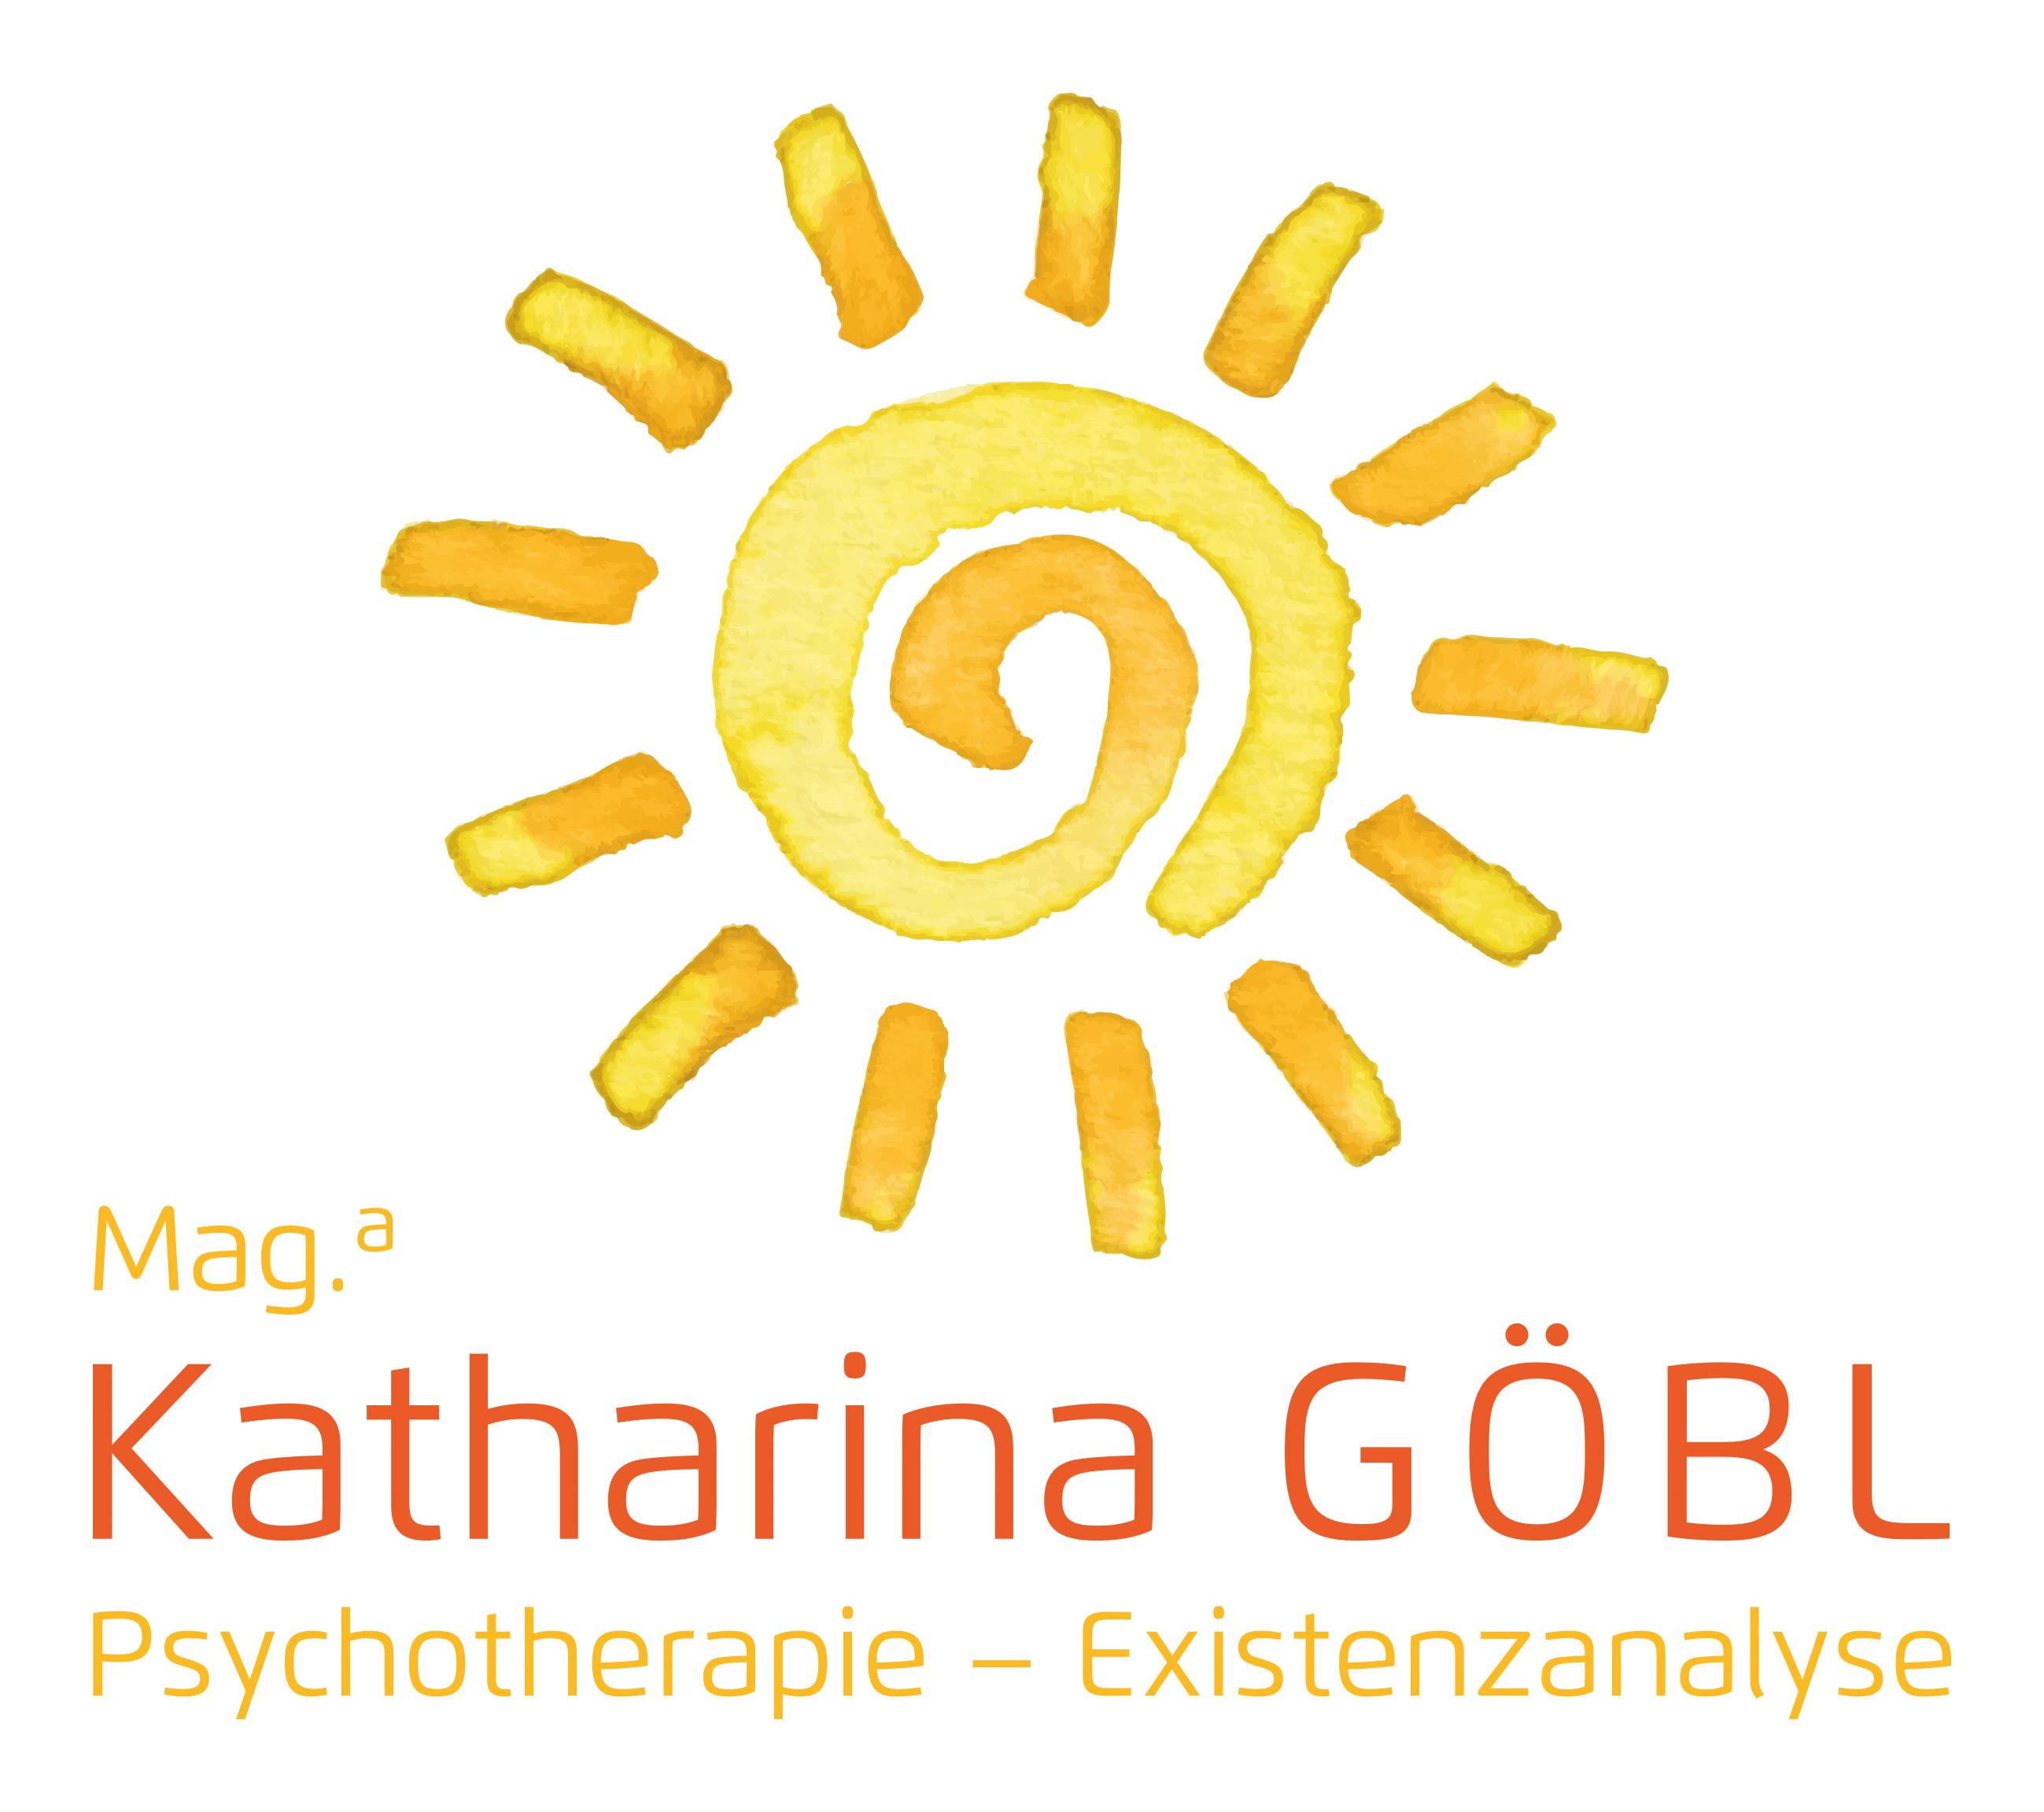 Mag.a Katharina Göbl